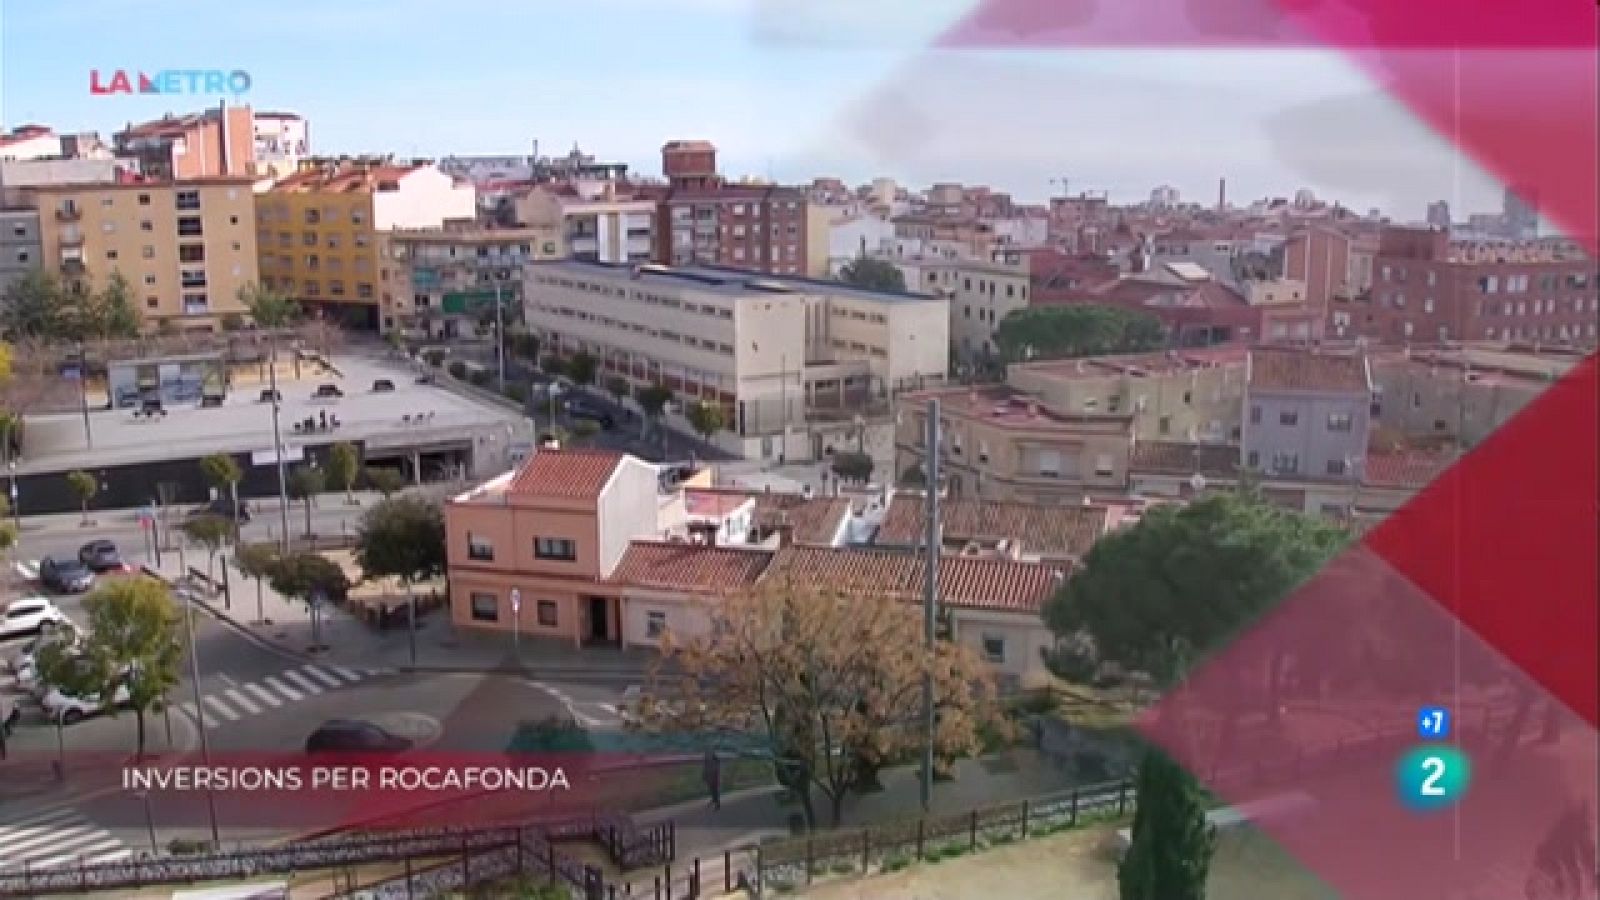 Inversions per Rocafonda, Lloguers prohibits i Platges sense fum | La Metro - RTVE Catalunya